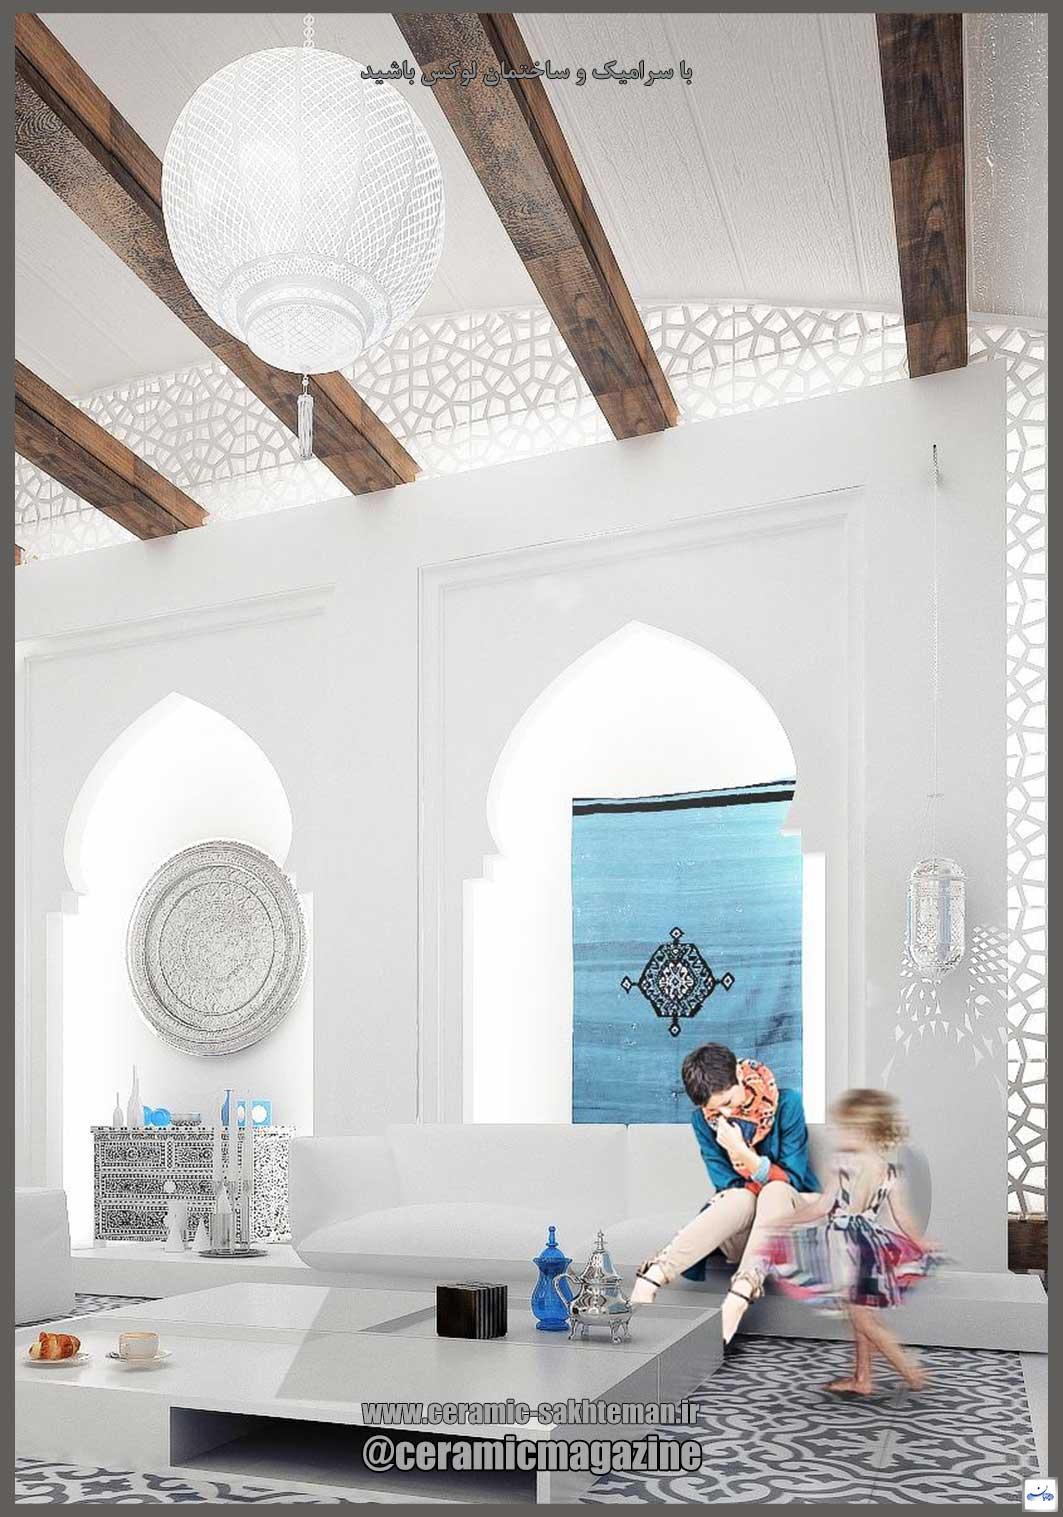 طراحی داخلی به سبک و سیاق مراکشی